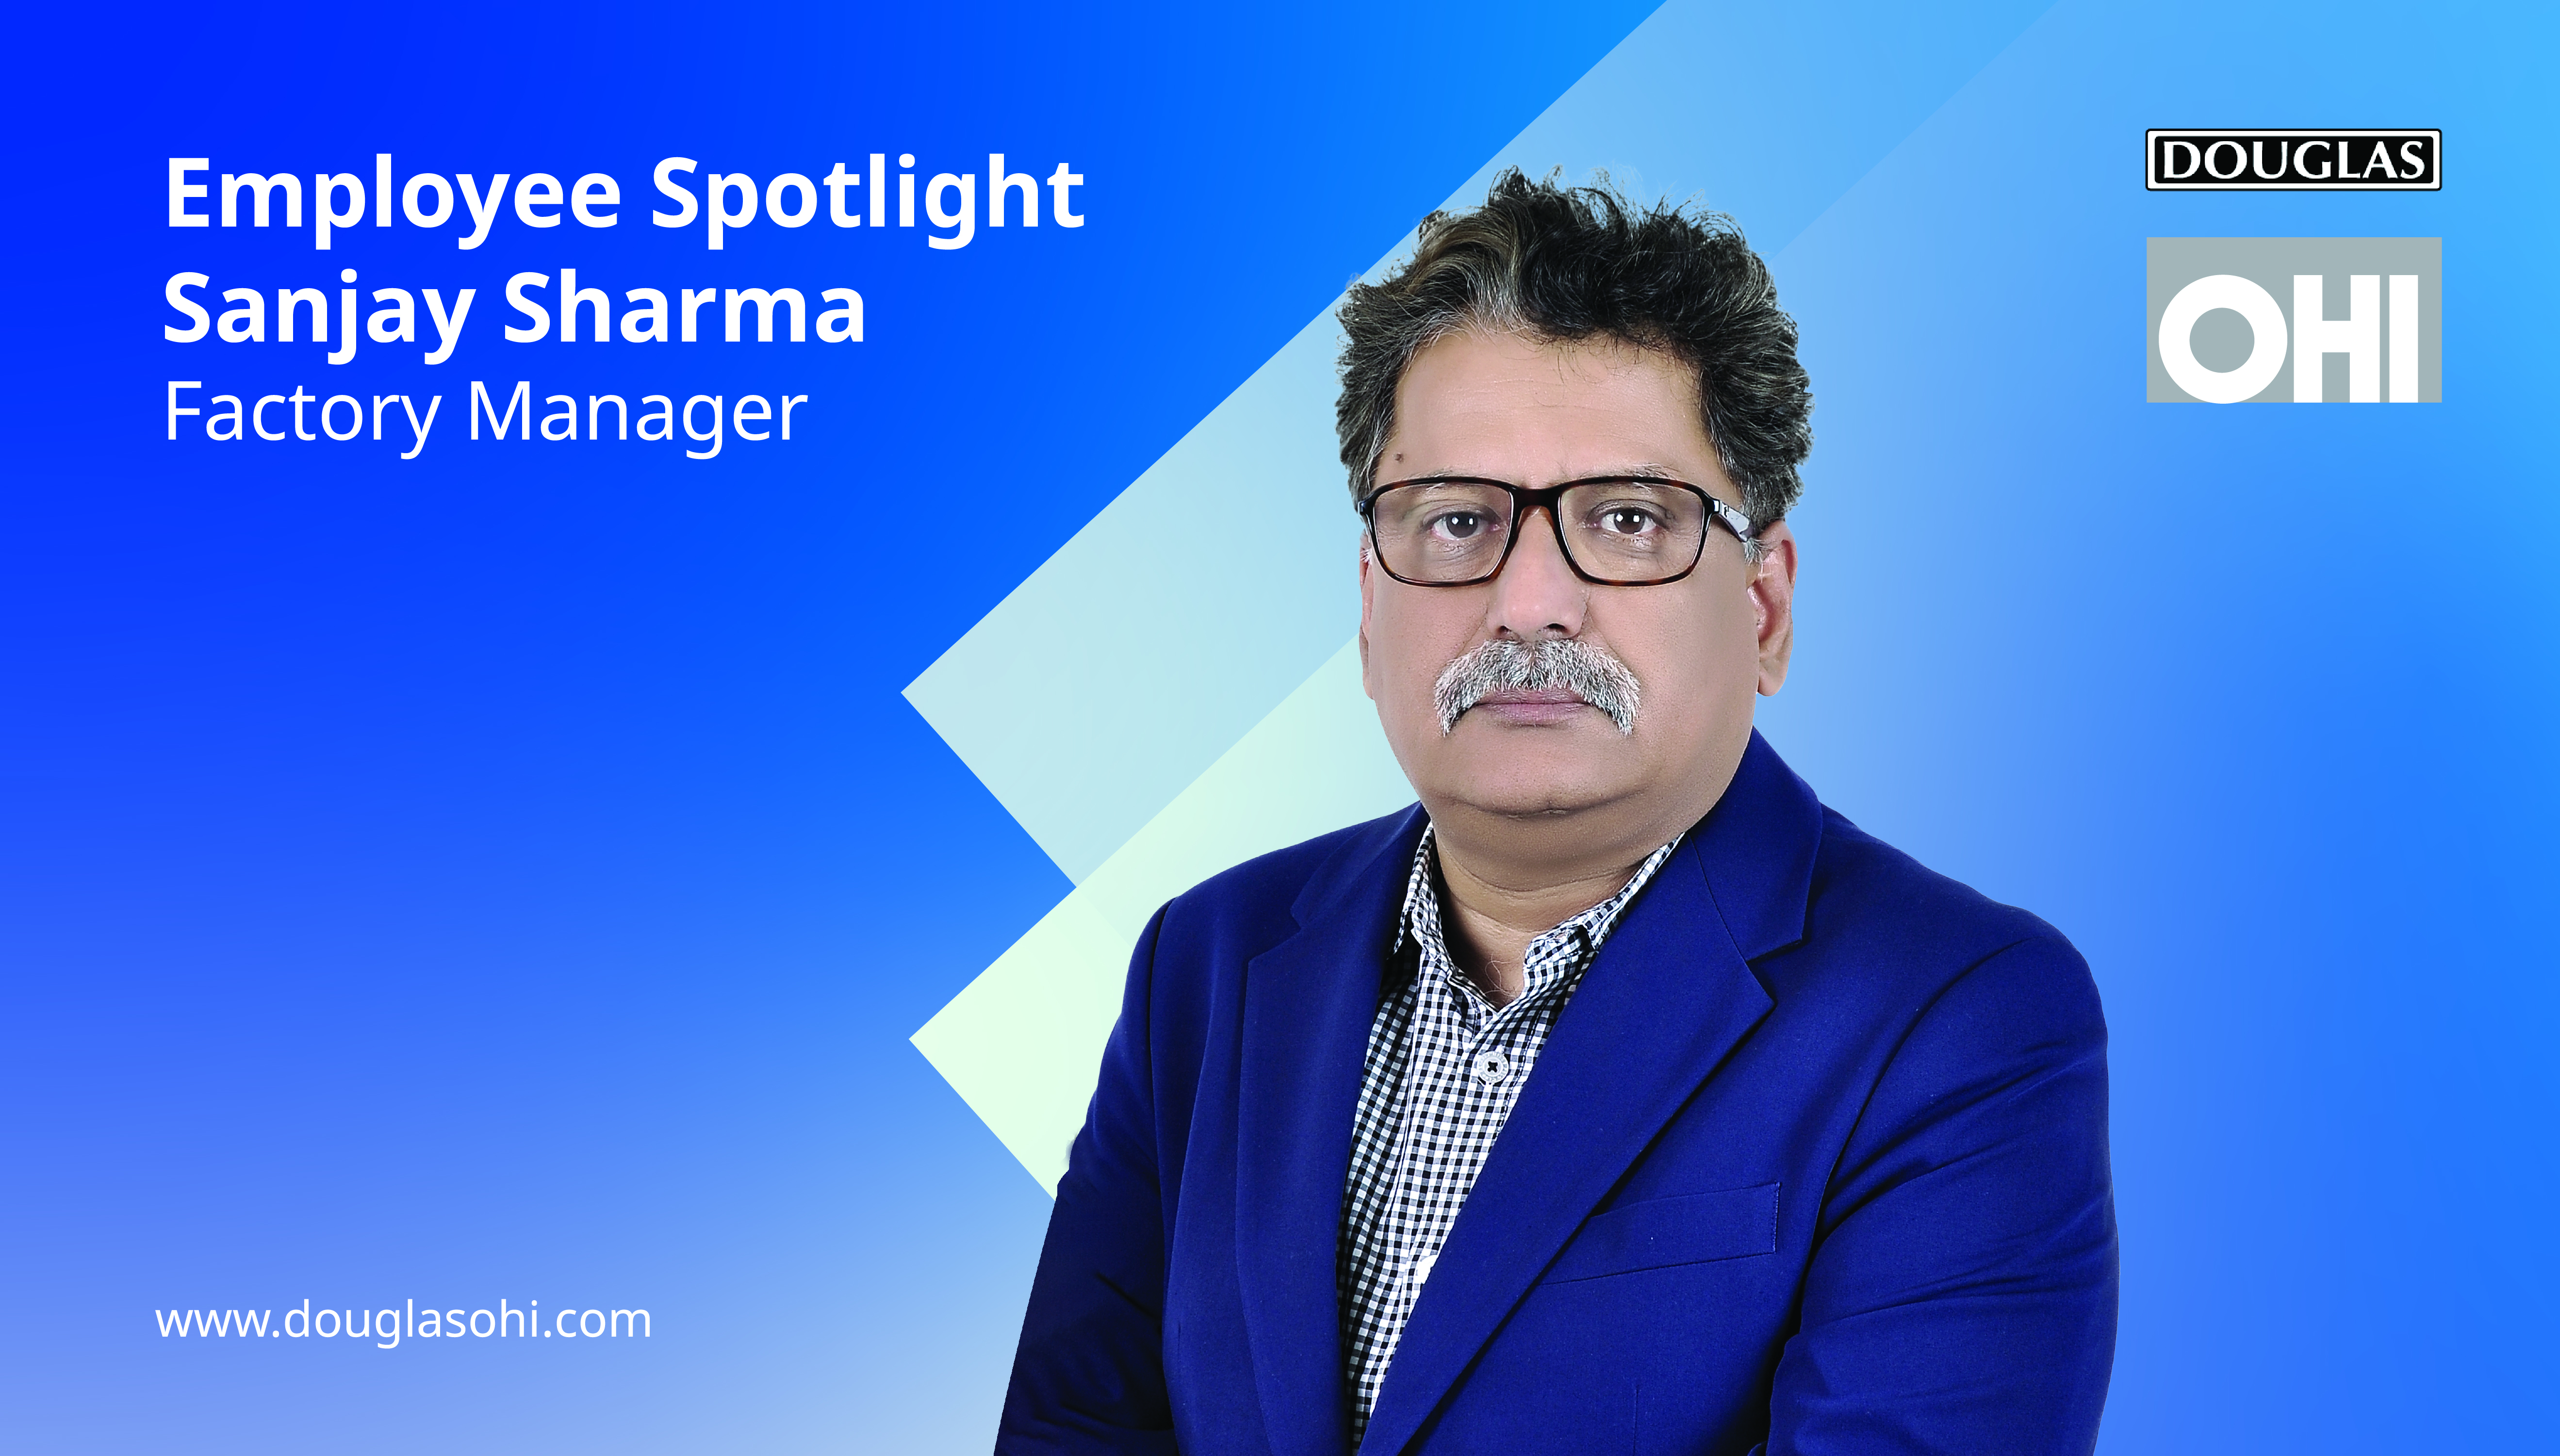 Employee Spotlight - Sanjay Sharma, Factory Manager at Douglas OHI